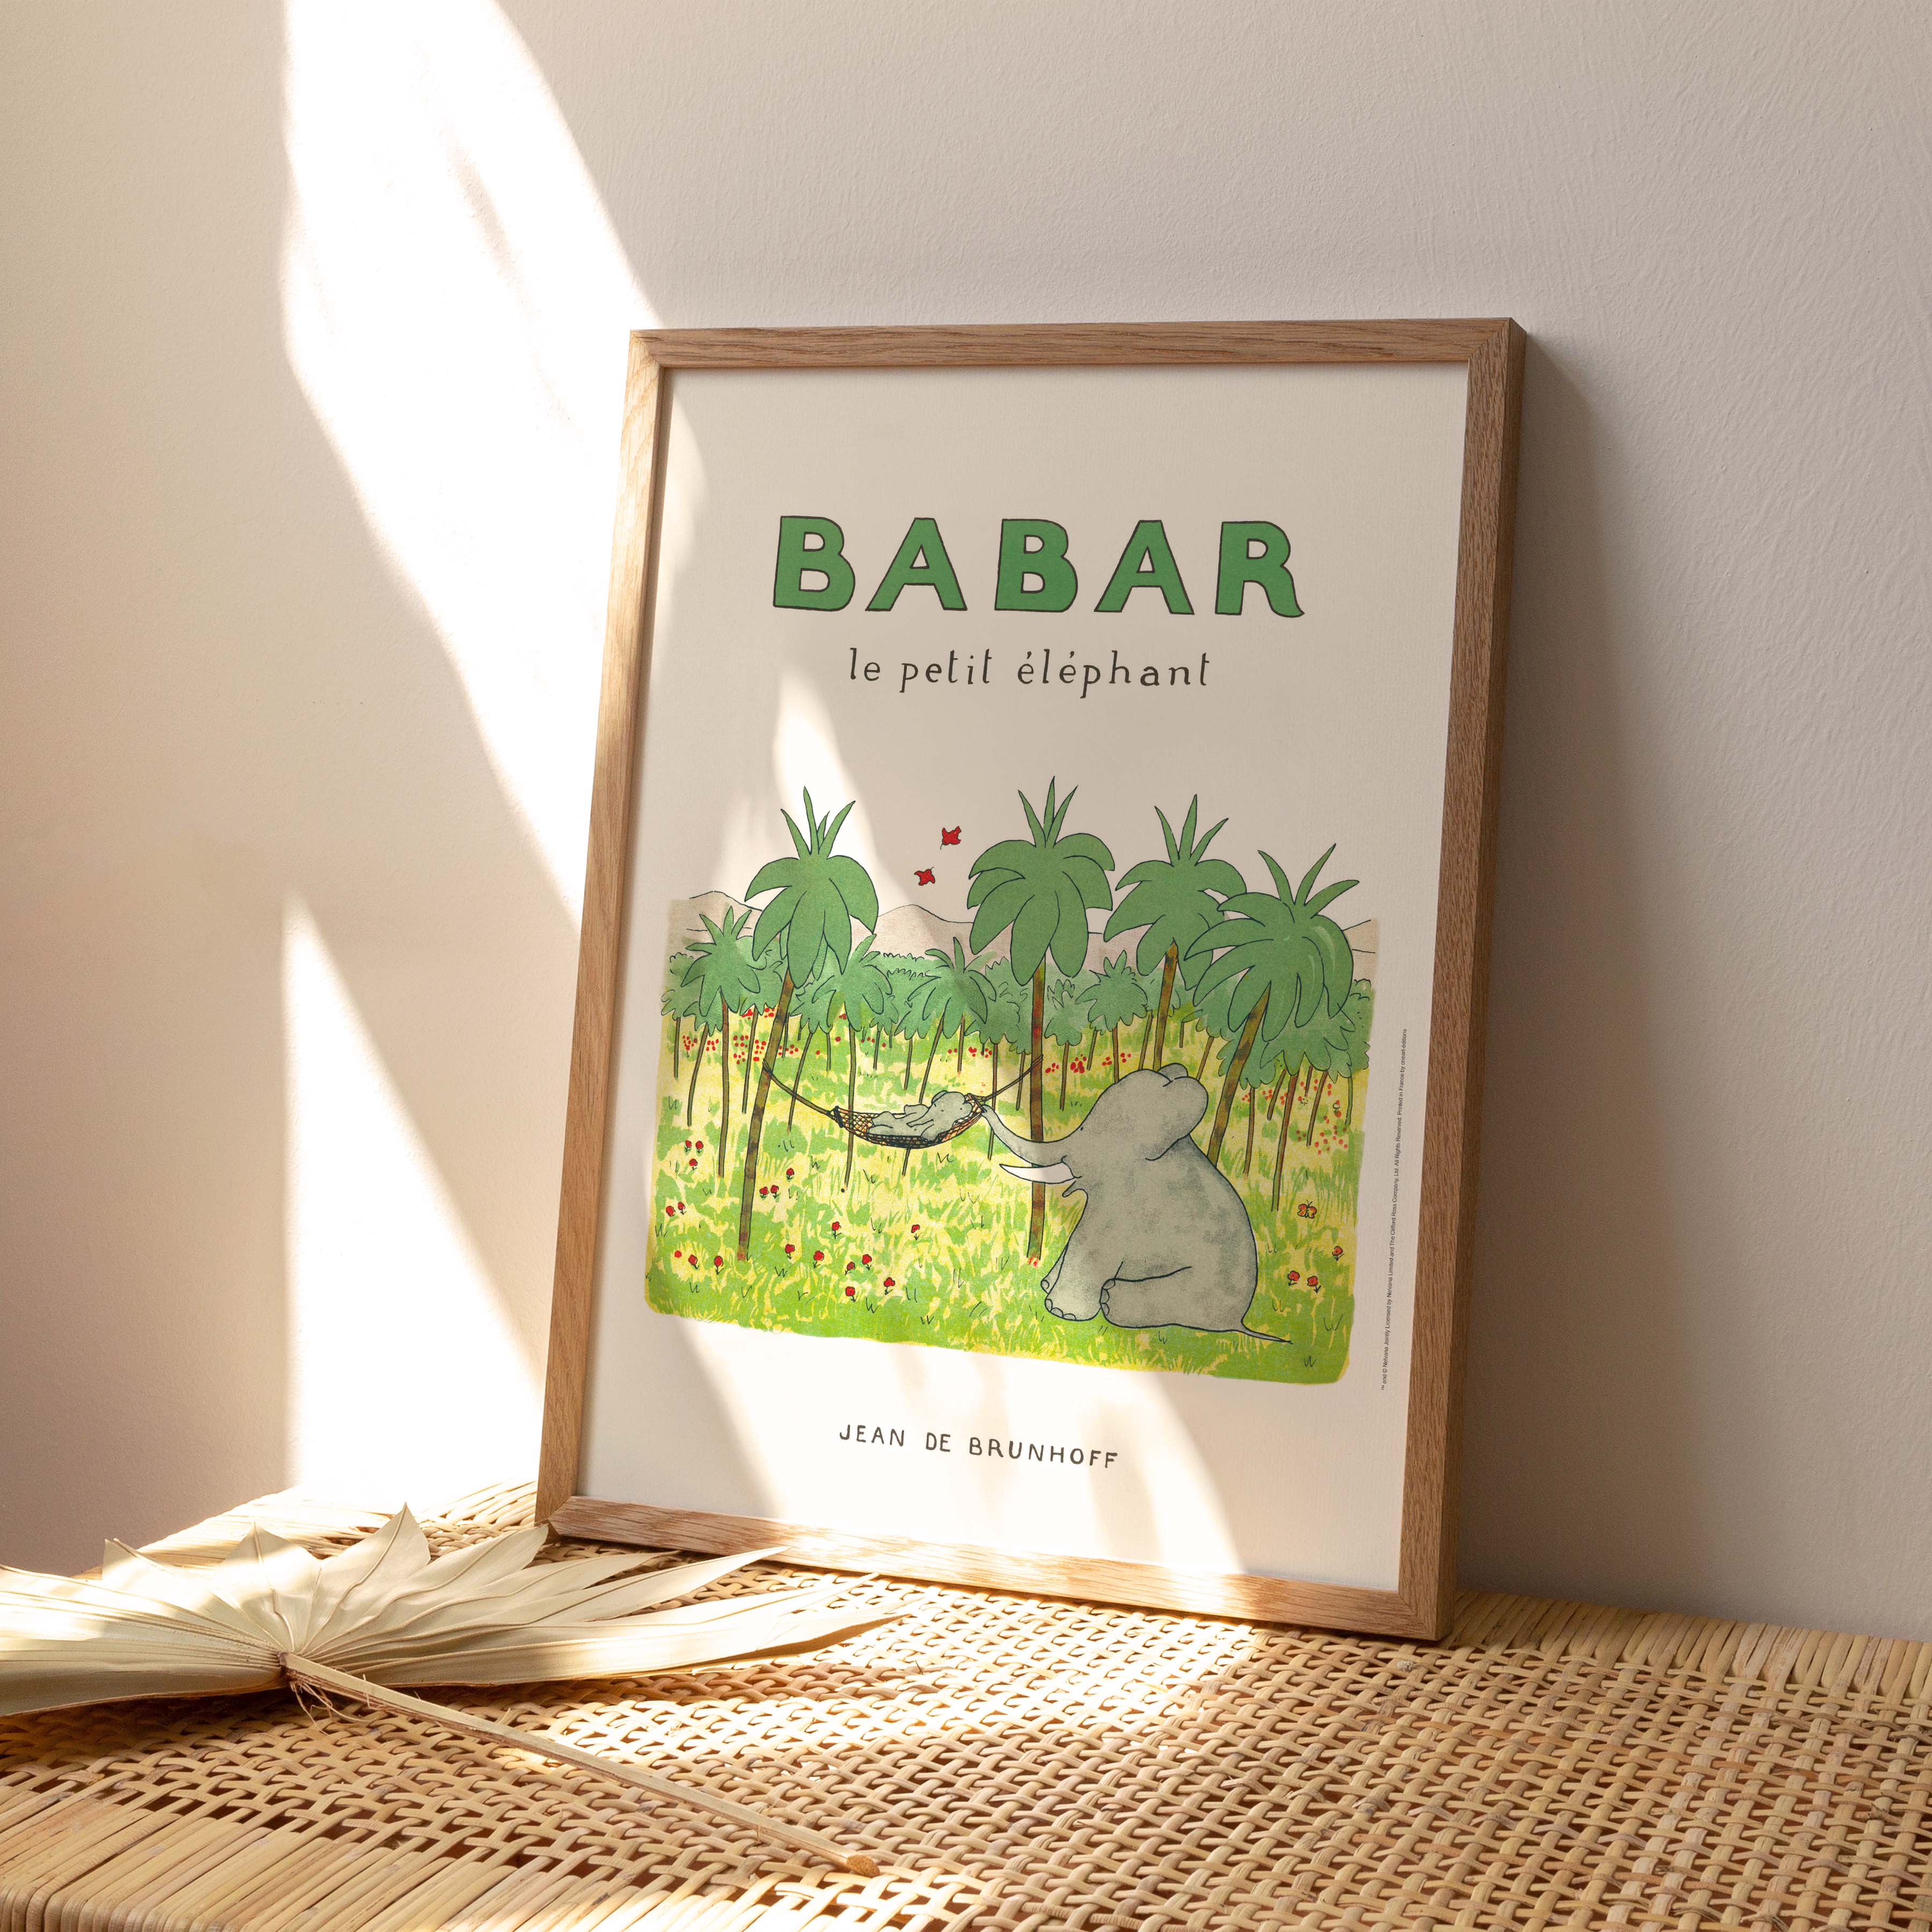 Affiche Babar le petit éléphant-oneart.fr